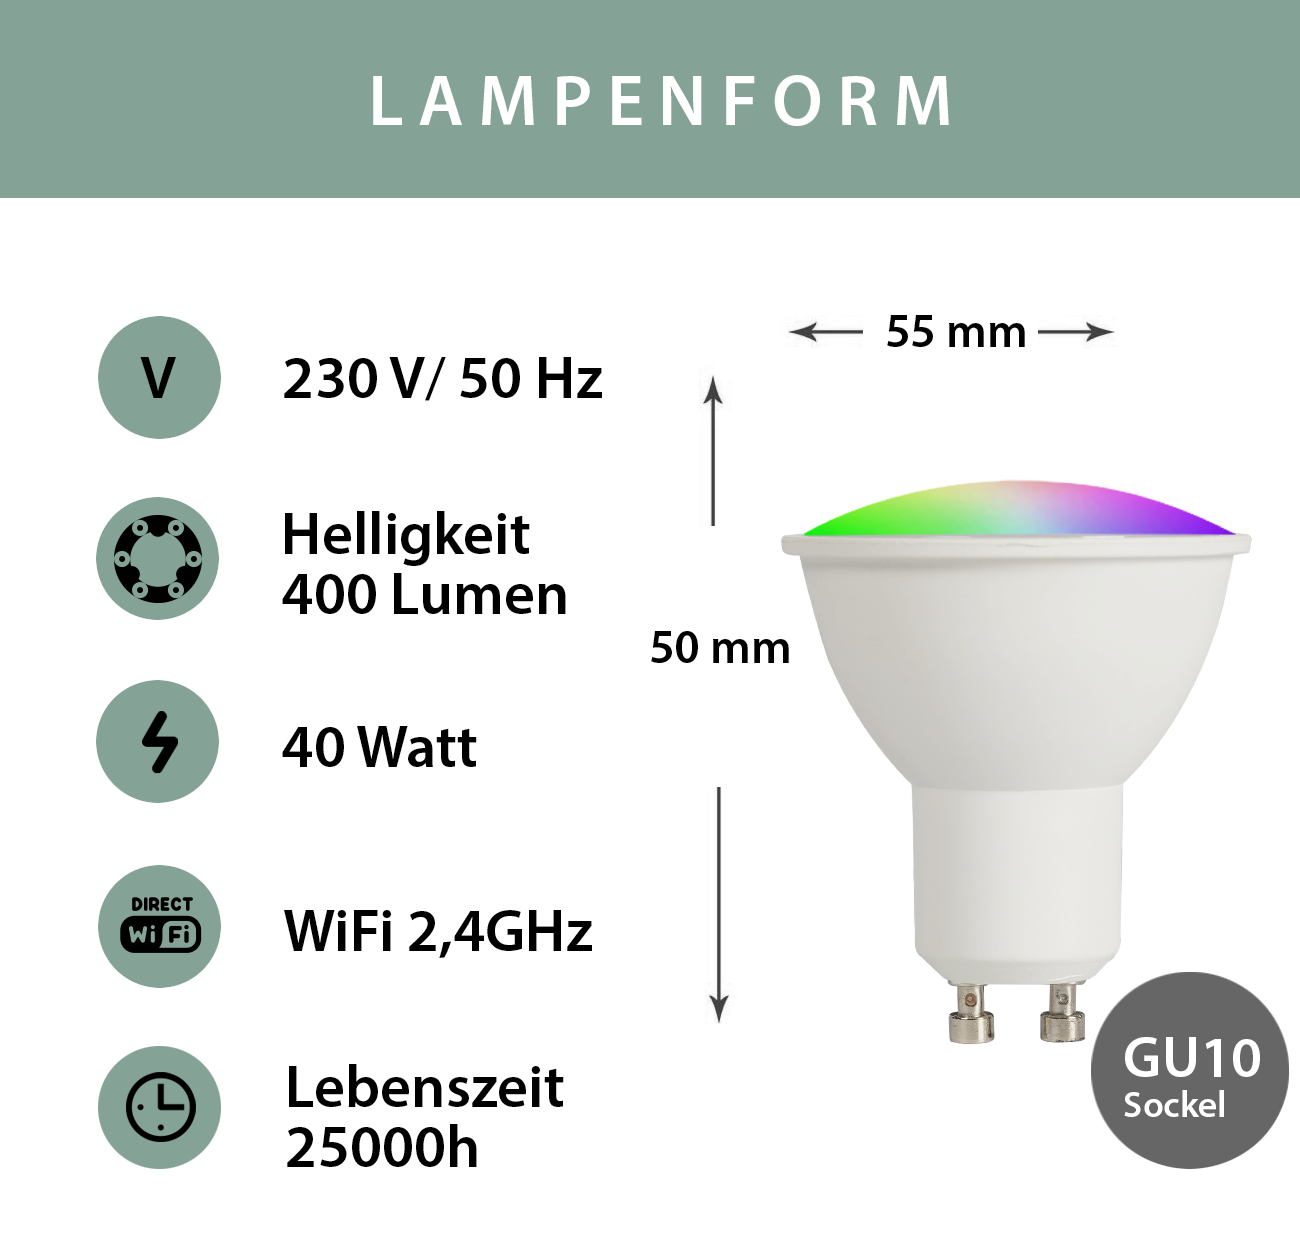 MILLIONEN LED 16 RGBW, GU10 2er XCOAST Glühbirnen RGB Lampe FARBEN & Smart WEISS